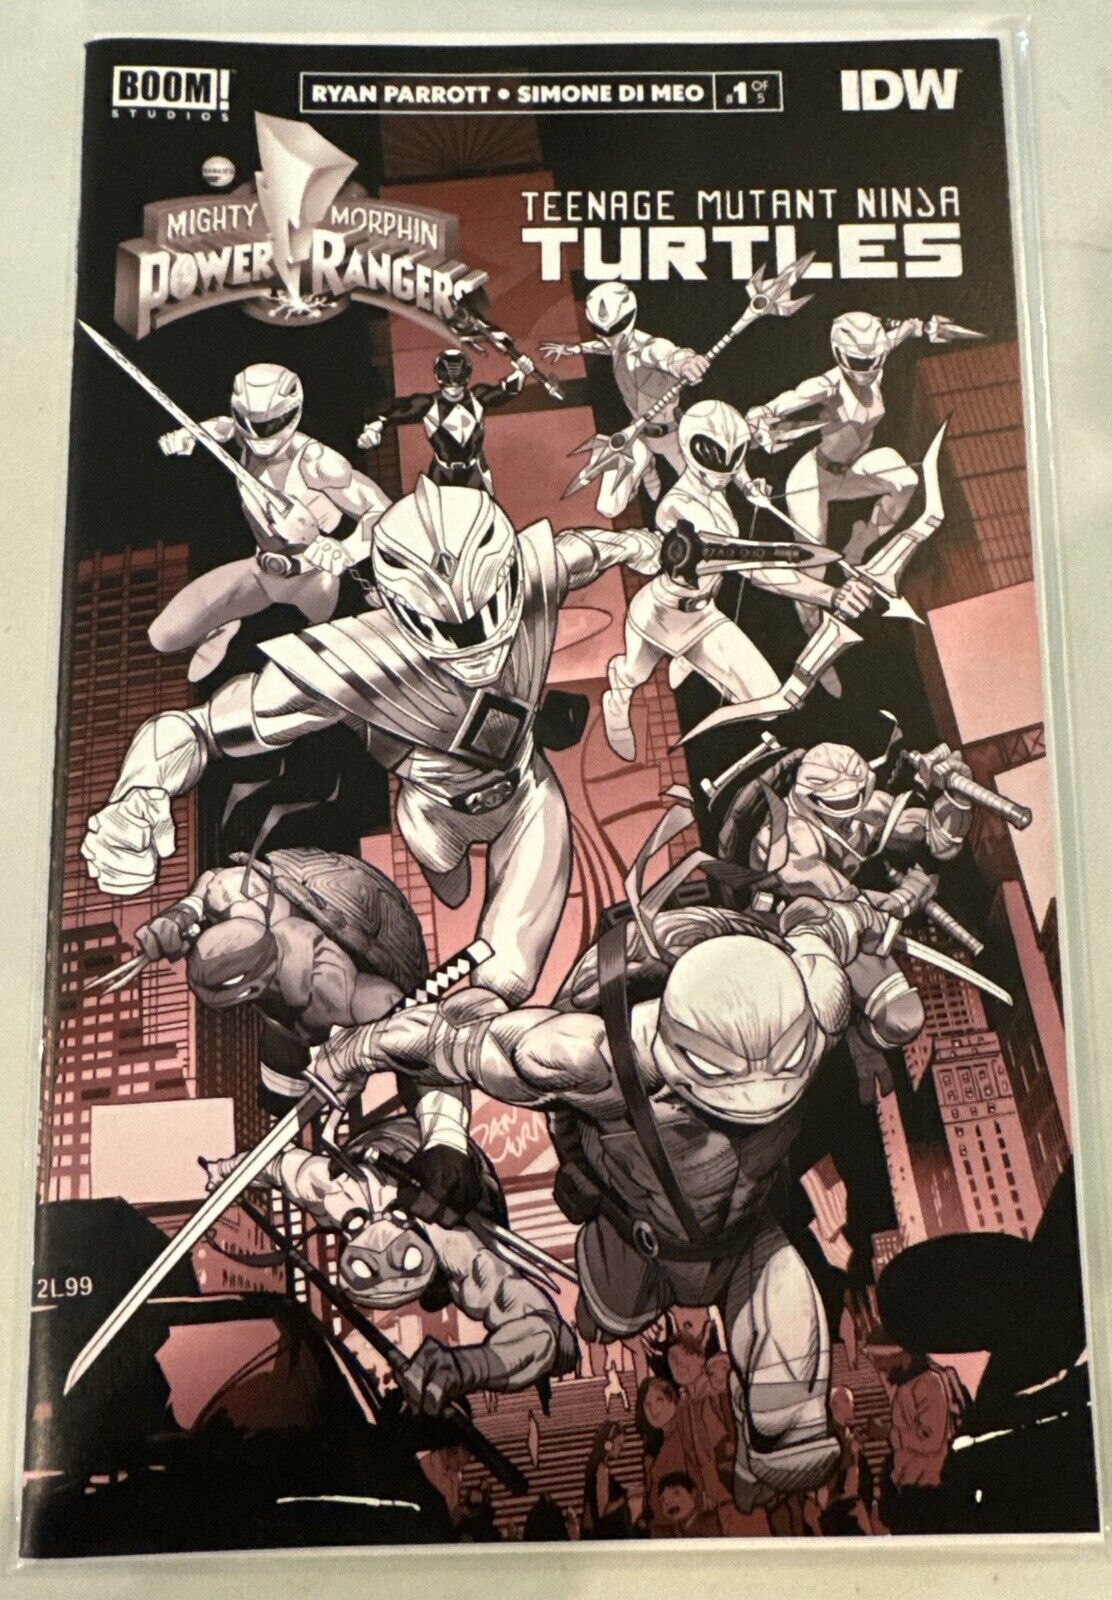 Mighty Morphin Power Rangers Teenage Mutant Ninja Turtles #1 Black & White